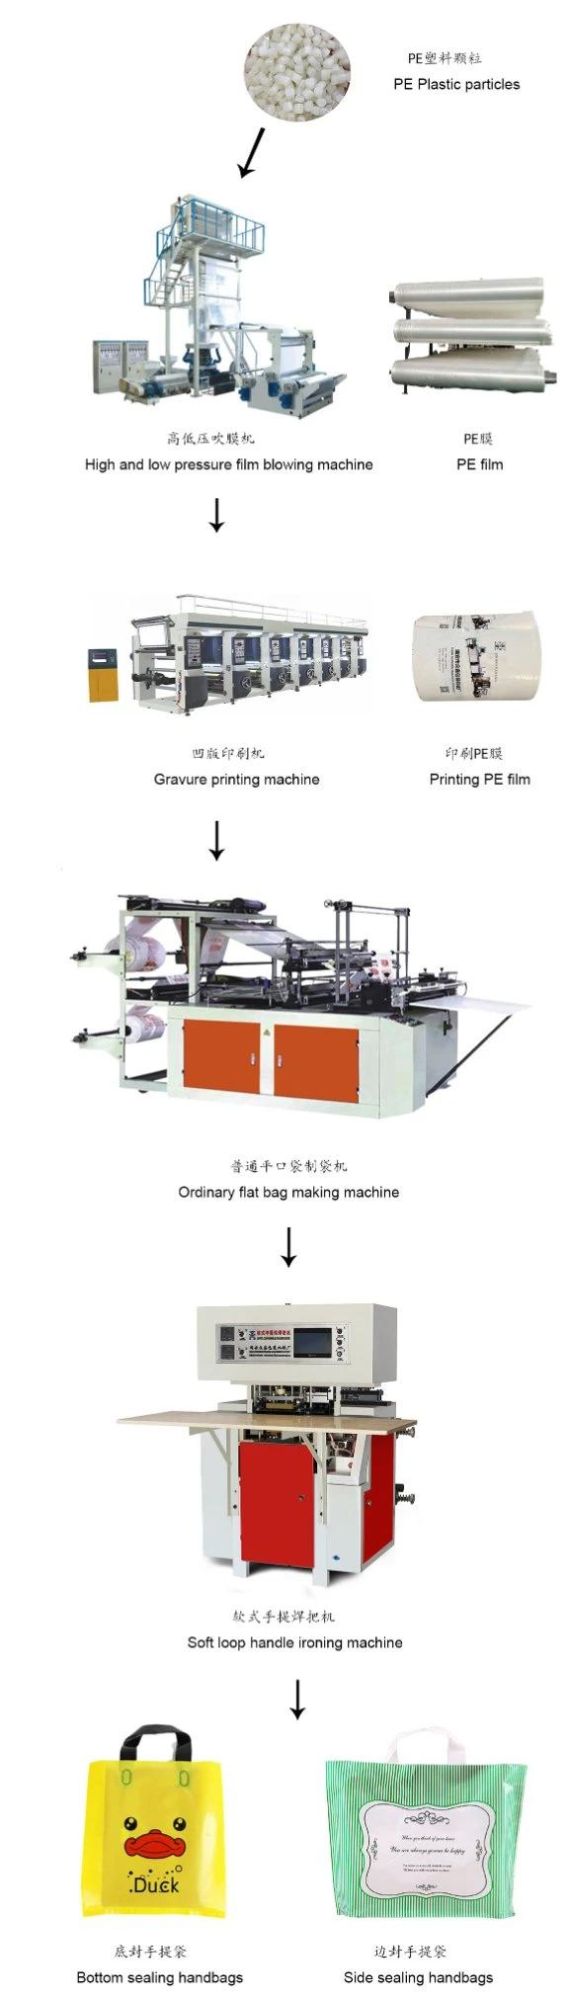 Zhongxin New Design Soft Loop Handle Gift Plastic Bag Welding Machine